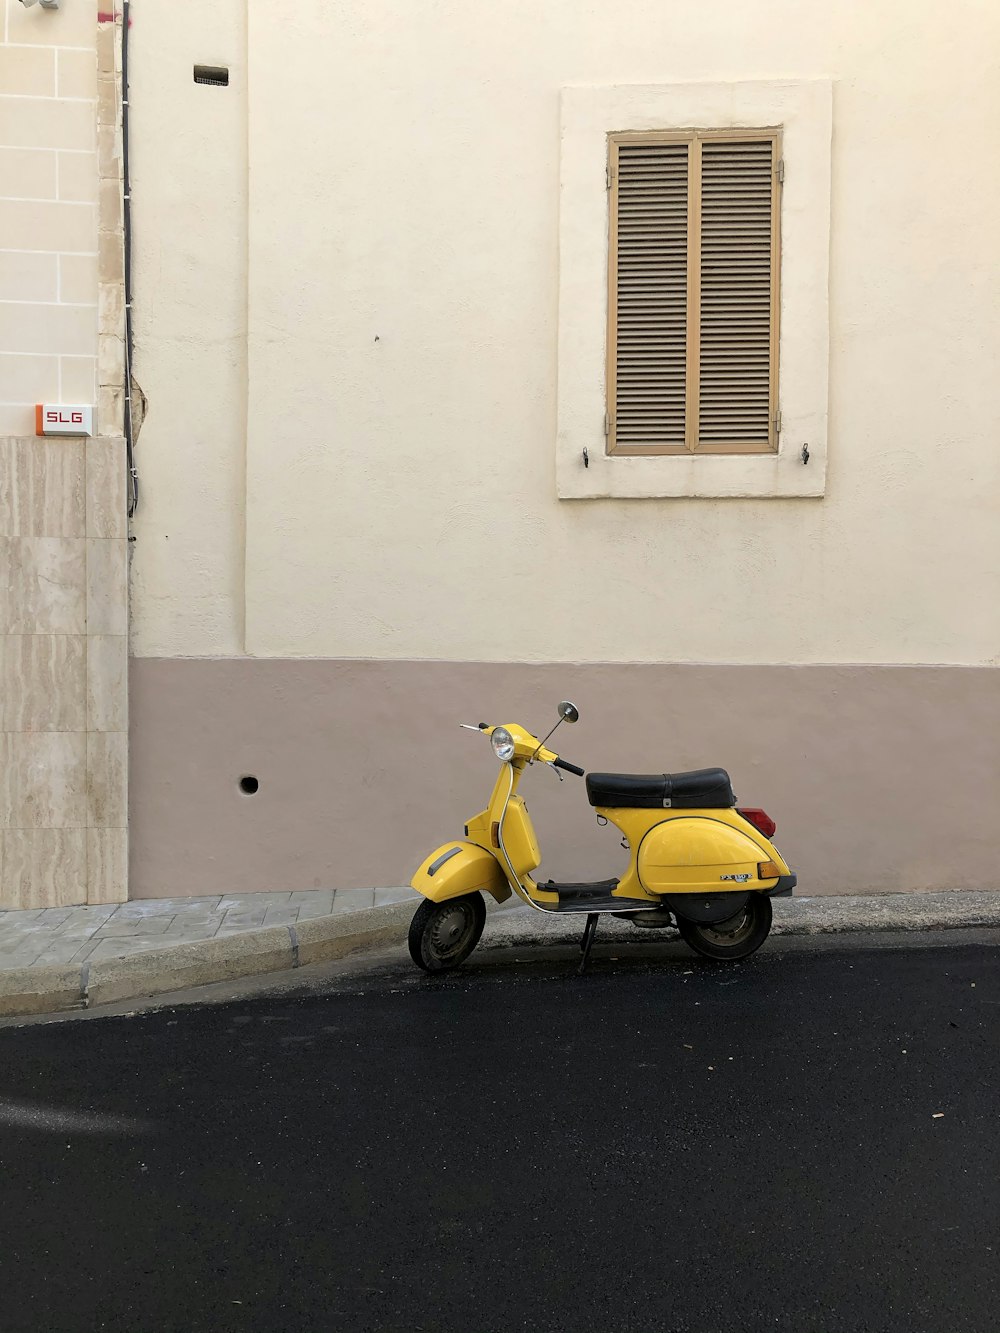 scooter motor amarelo e preto estacionado ao lado do edifício de concreto branco durante o dia